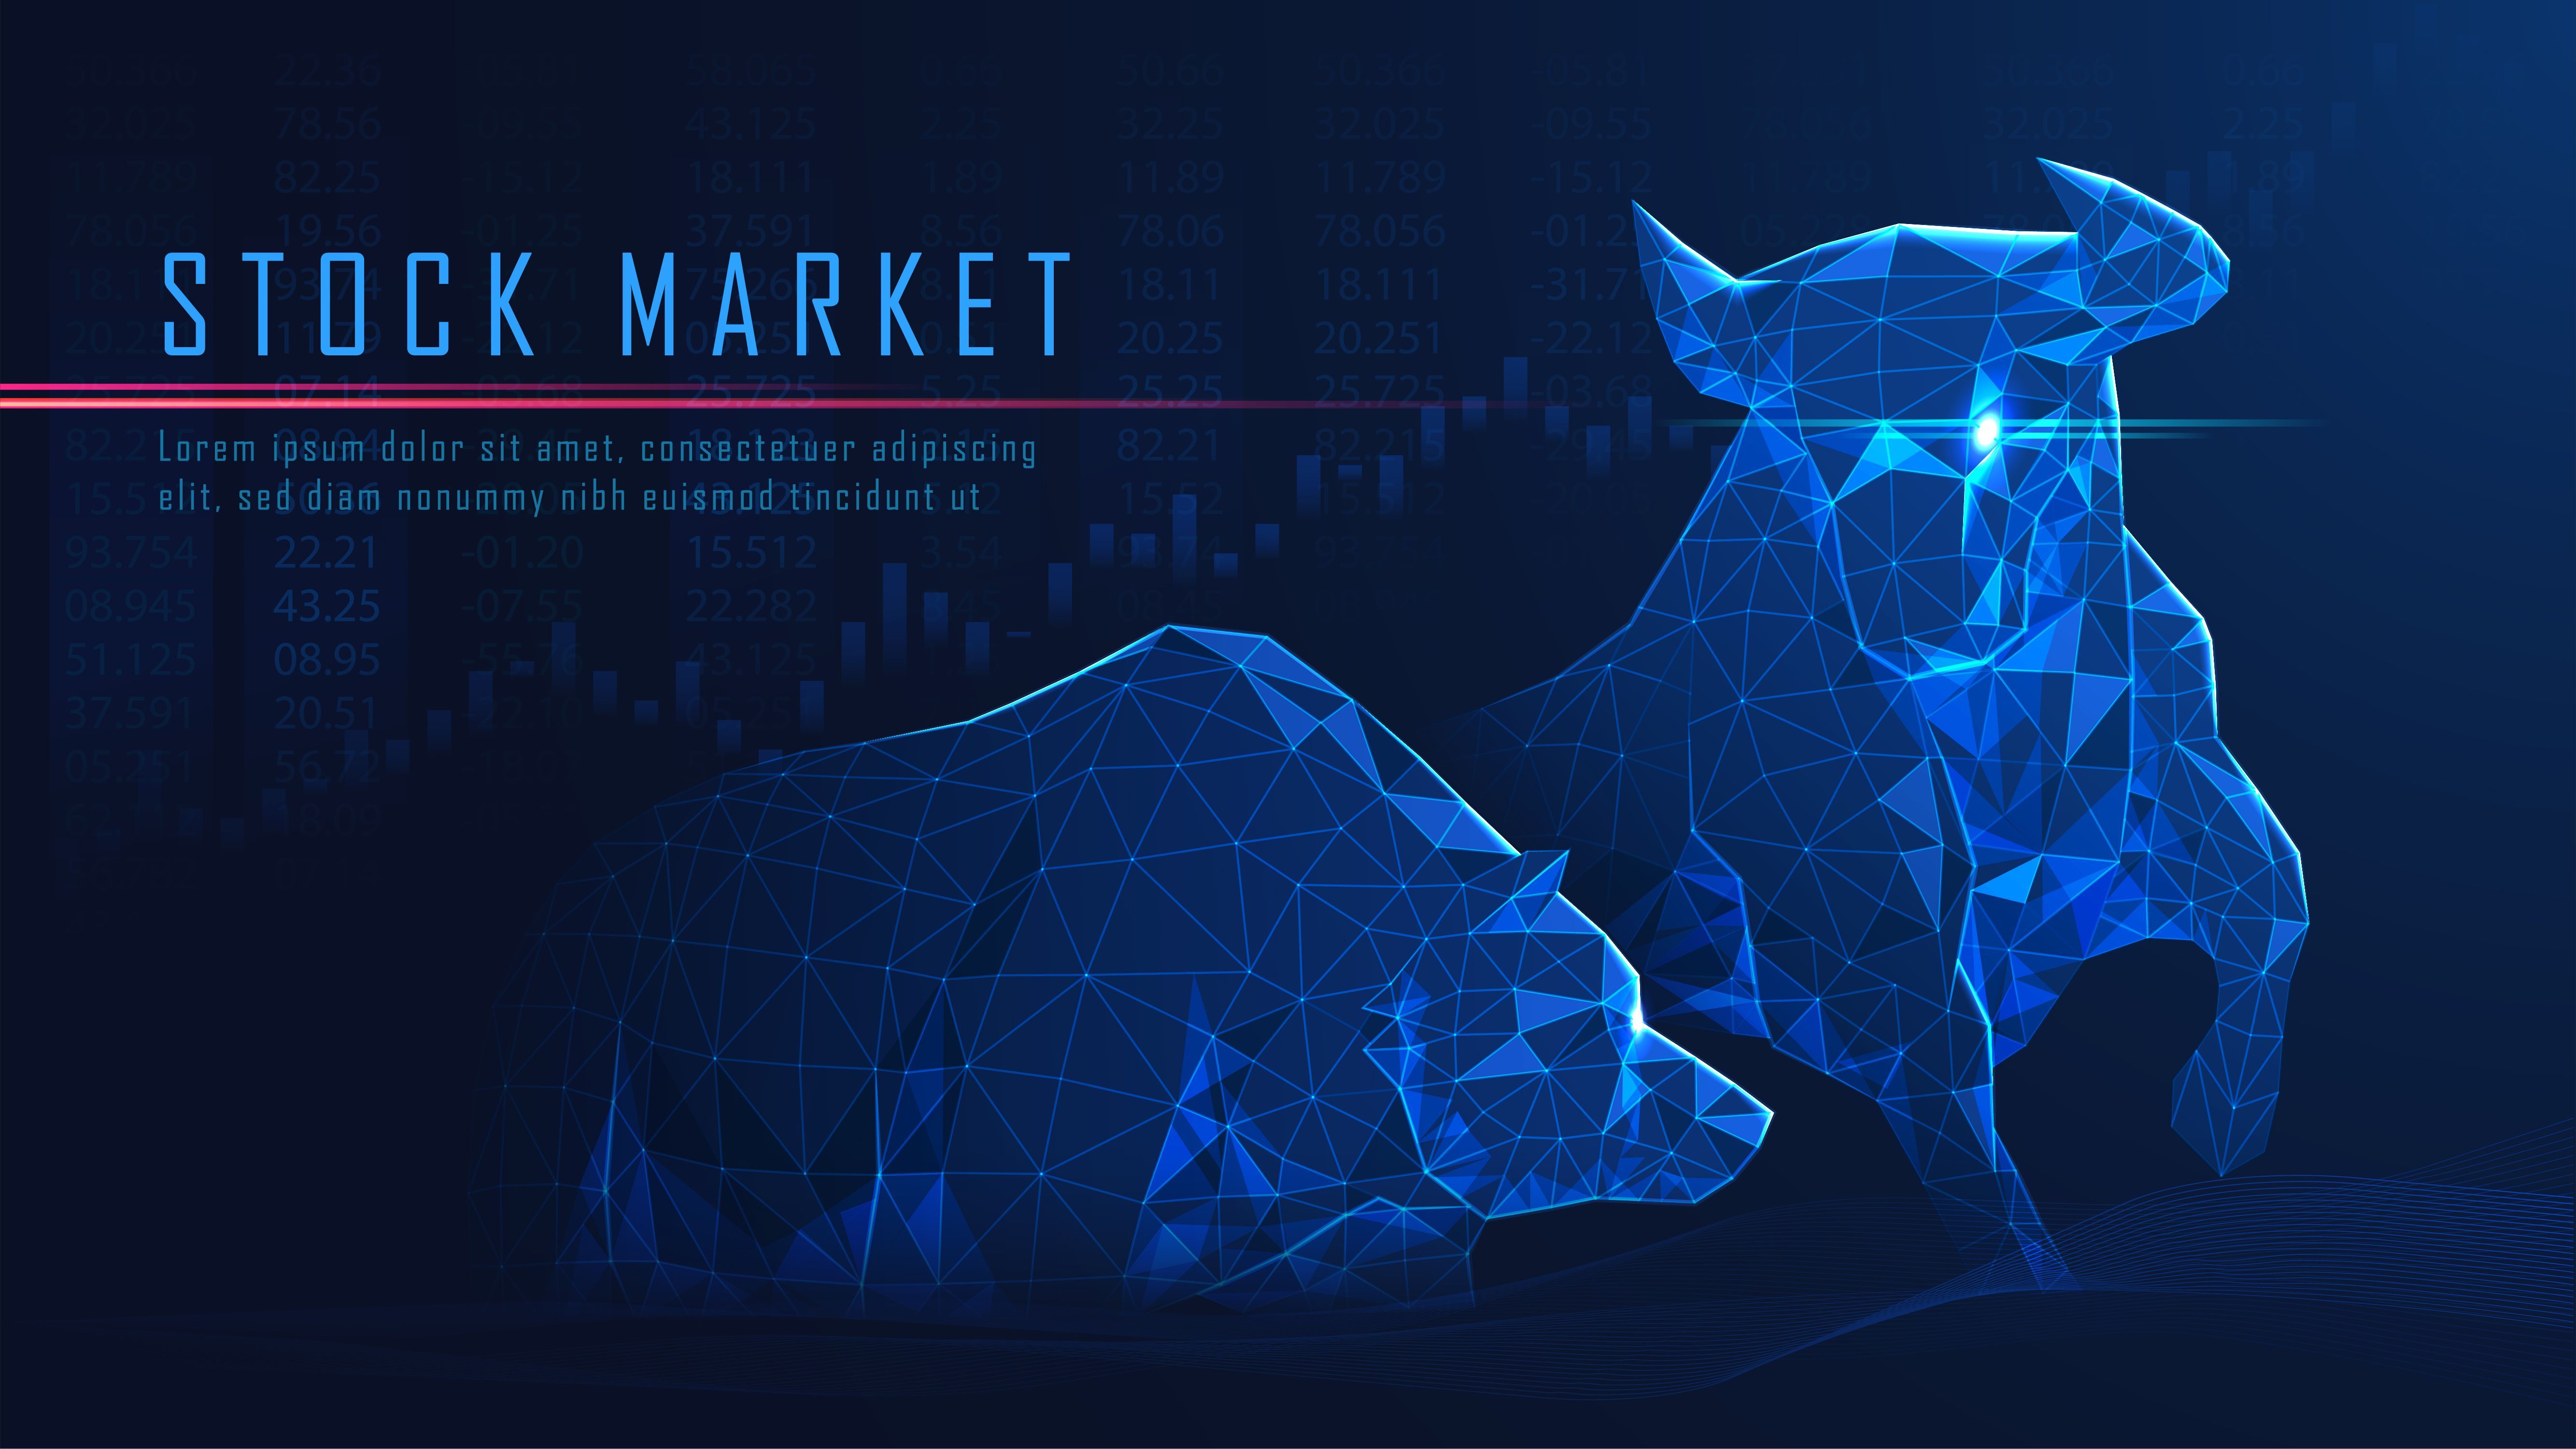 Concept Art Of Bullish Vs Bearish. Stock market, Concept art, Banner ads design